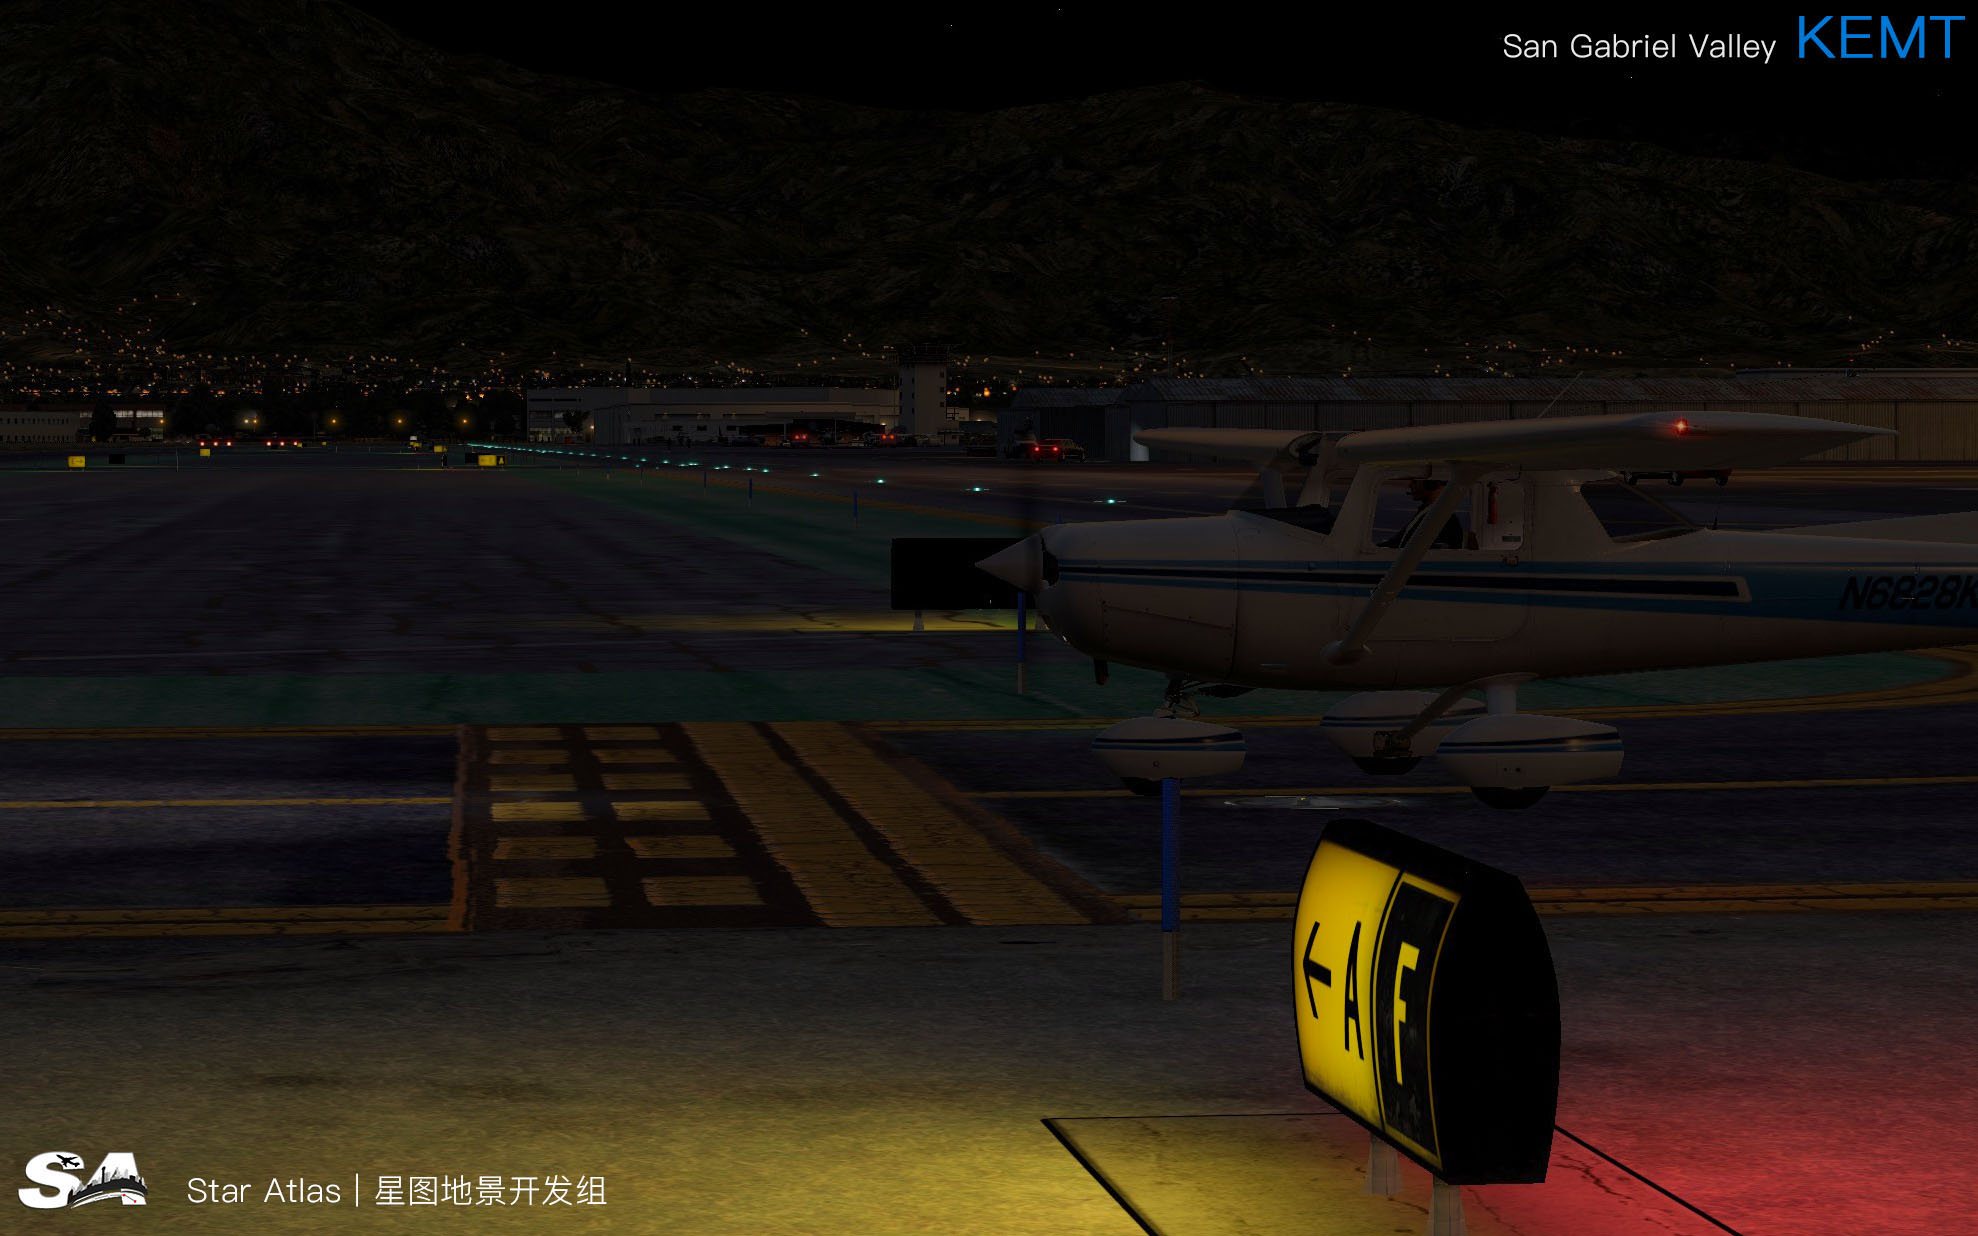 【X-Plane】KEMT-圣盖博谷机场 HD 1.0-1303 